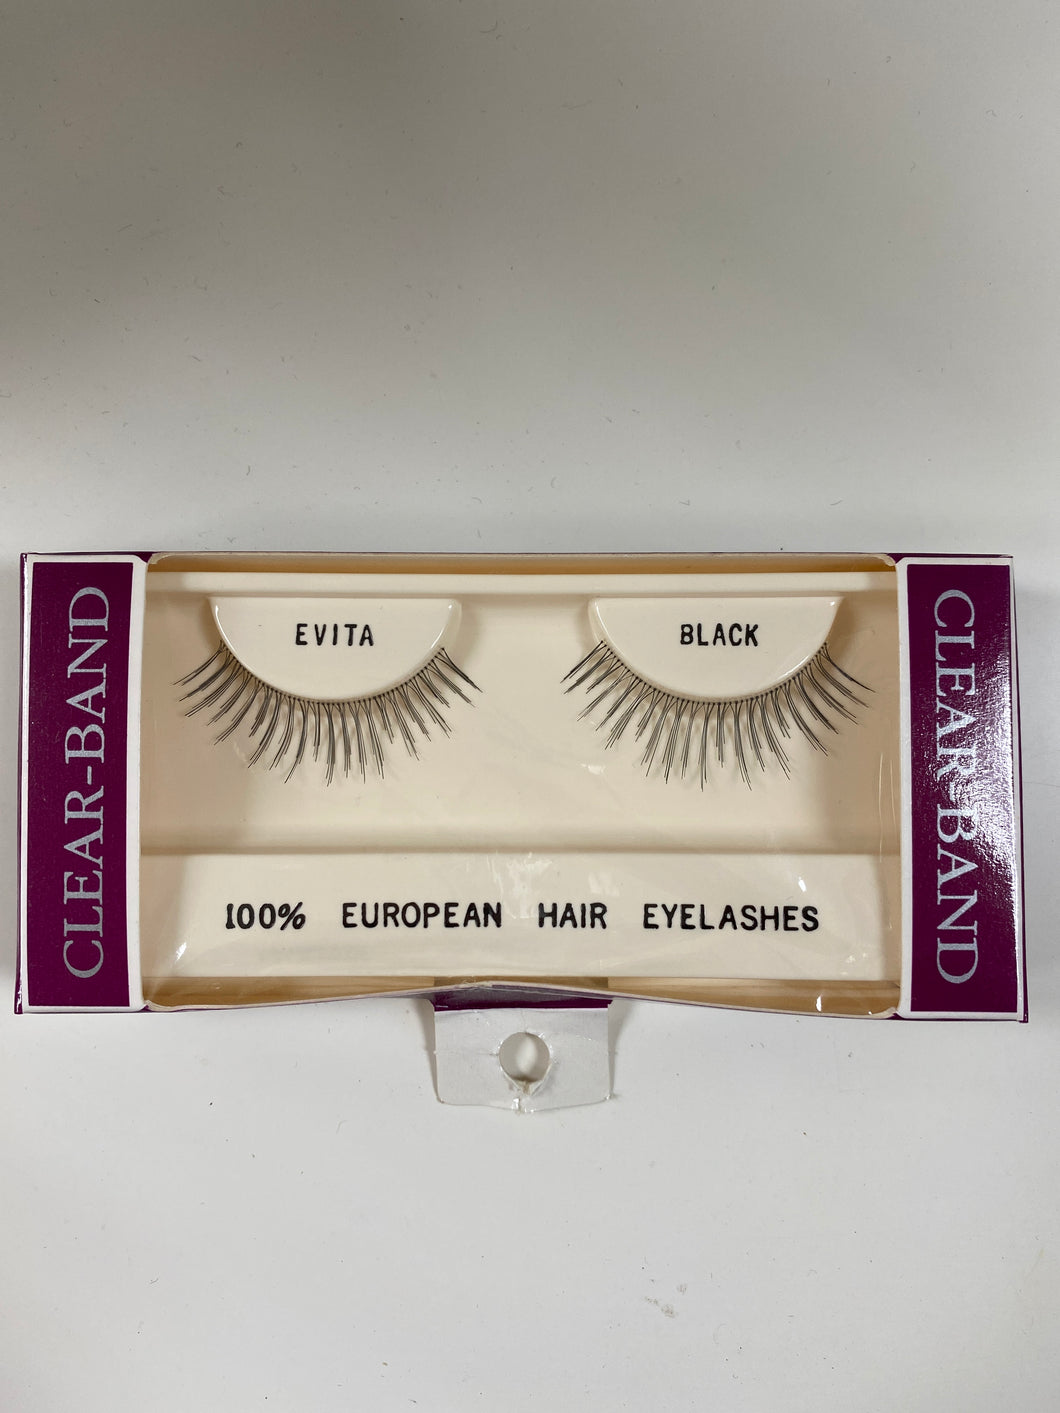 Beautee Sense Clear-band 100% European Hair Eyelashes - Evita